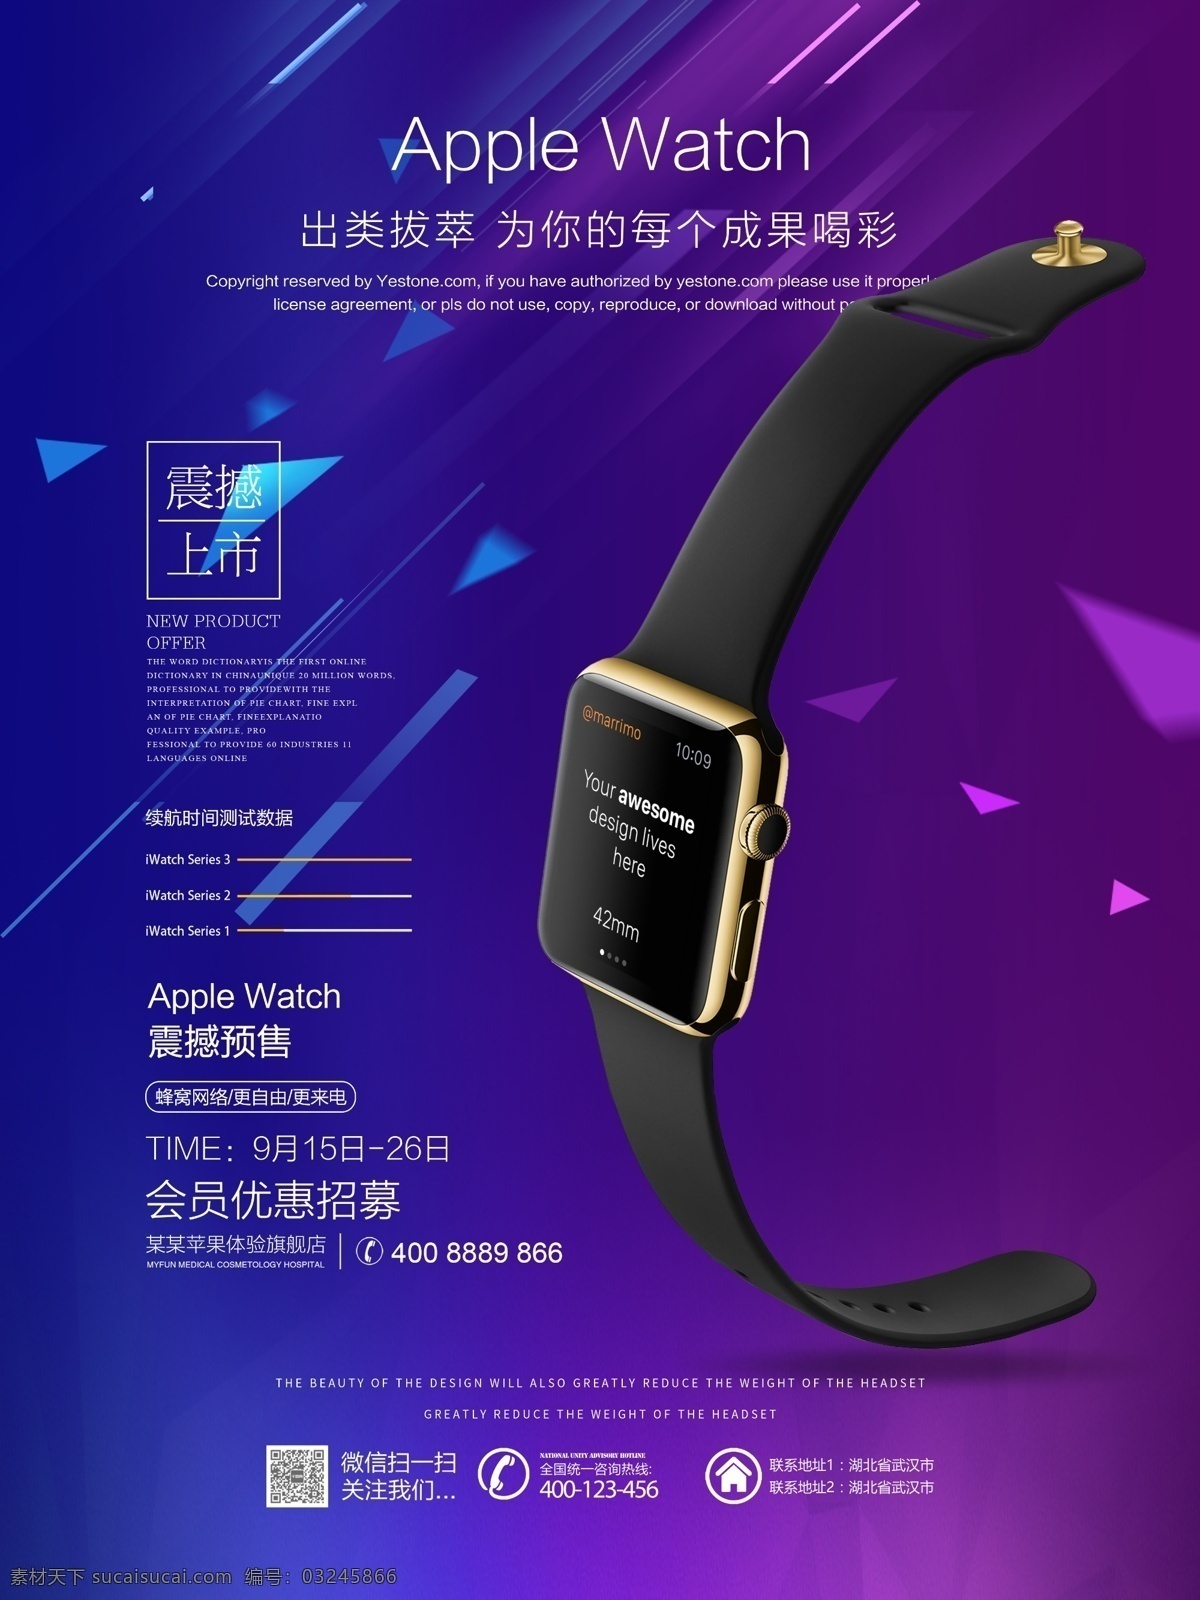 紫 蓝色 大气 苹果 手表 促销 宣传海报 紫蓝色 简约 科技 黑金 苹果手表 apple watch iwatch 智能手表 手环 宣传 海报